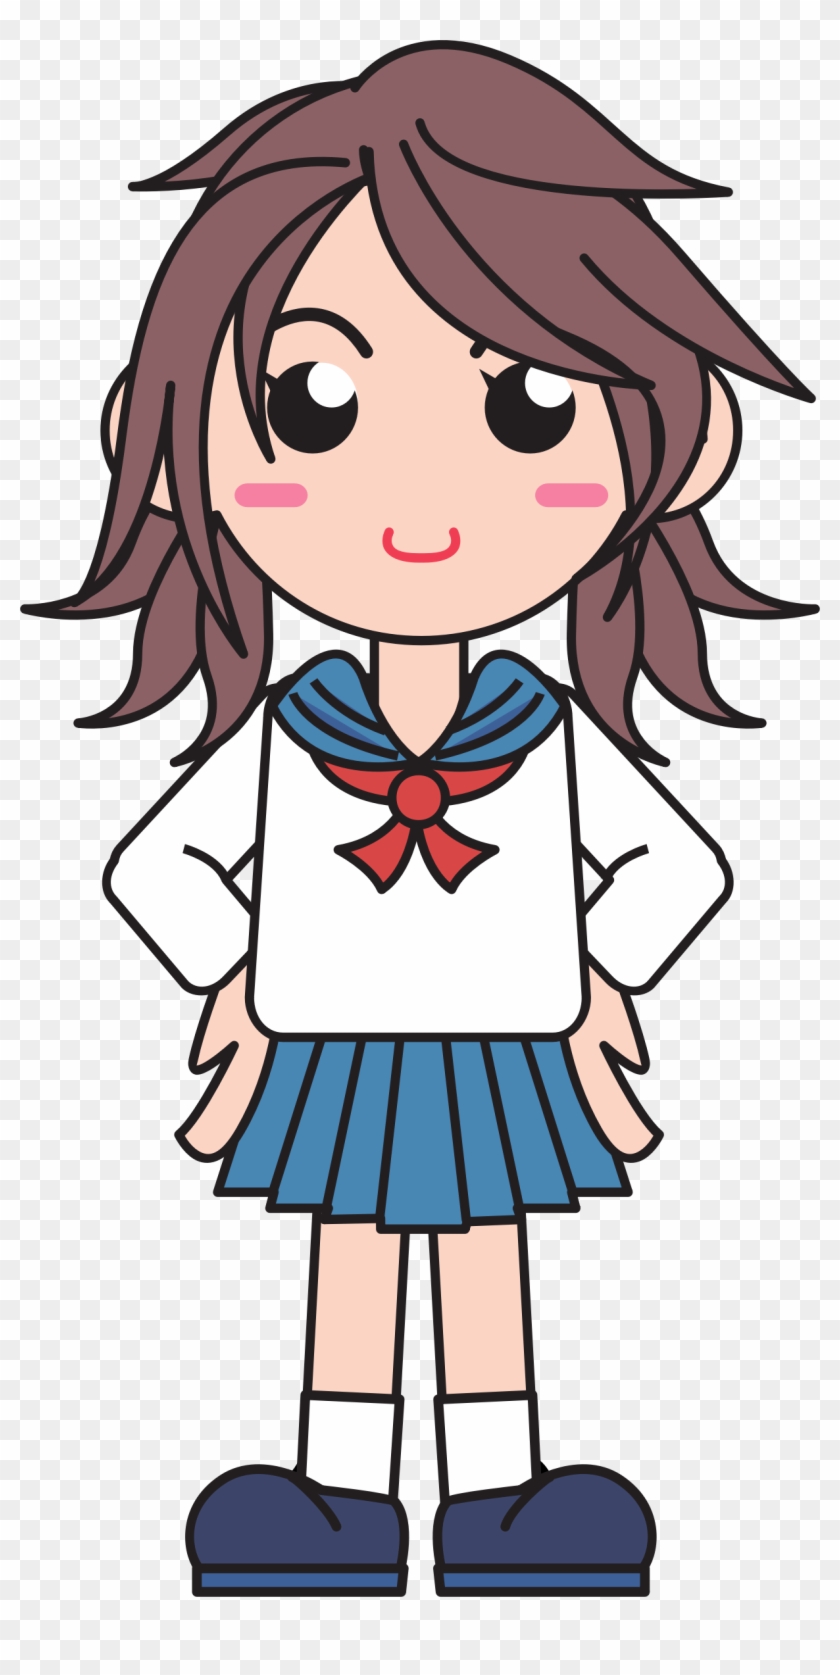 School Girl - Girl In School Uniform Clipart #367255